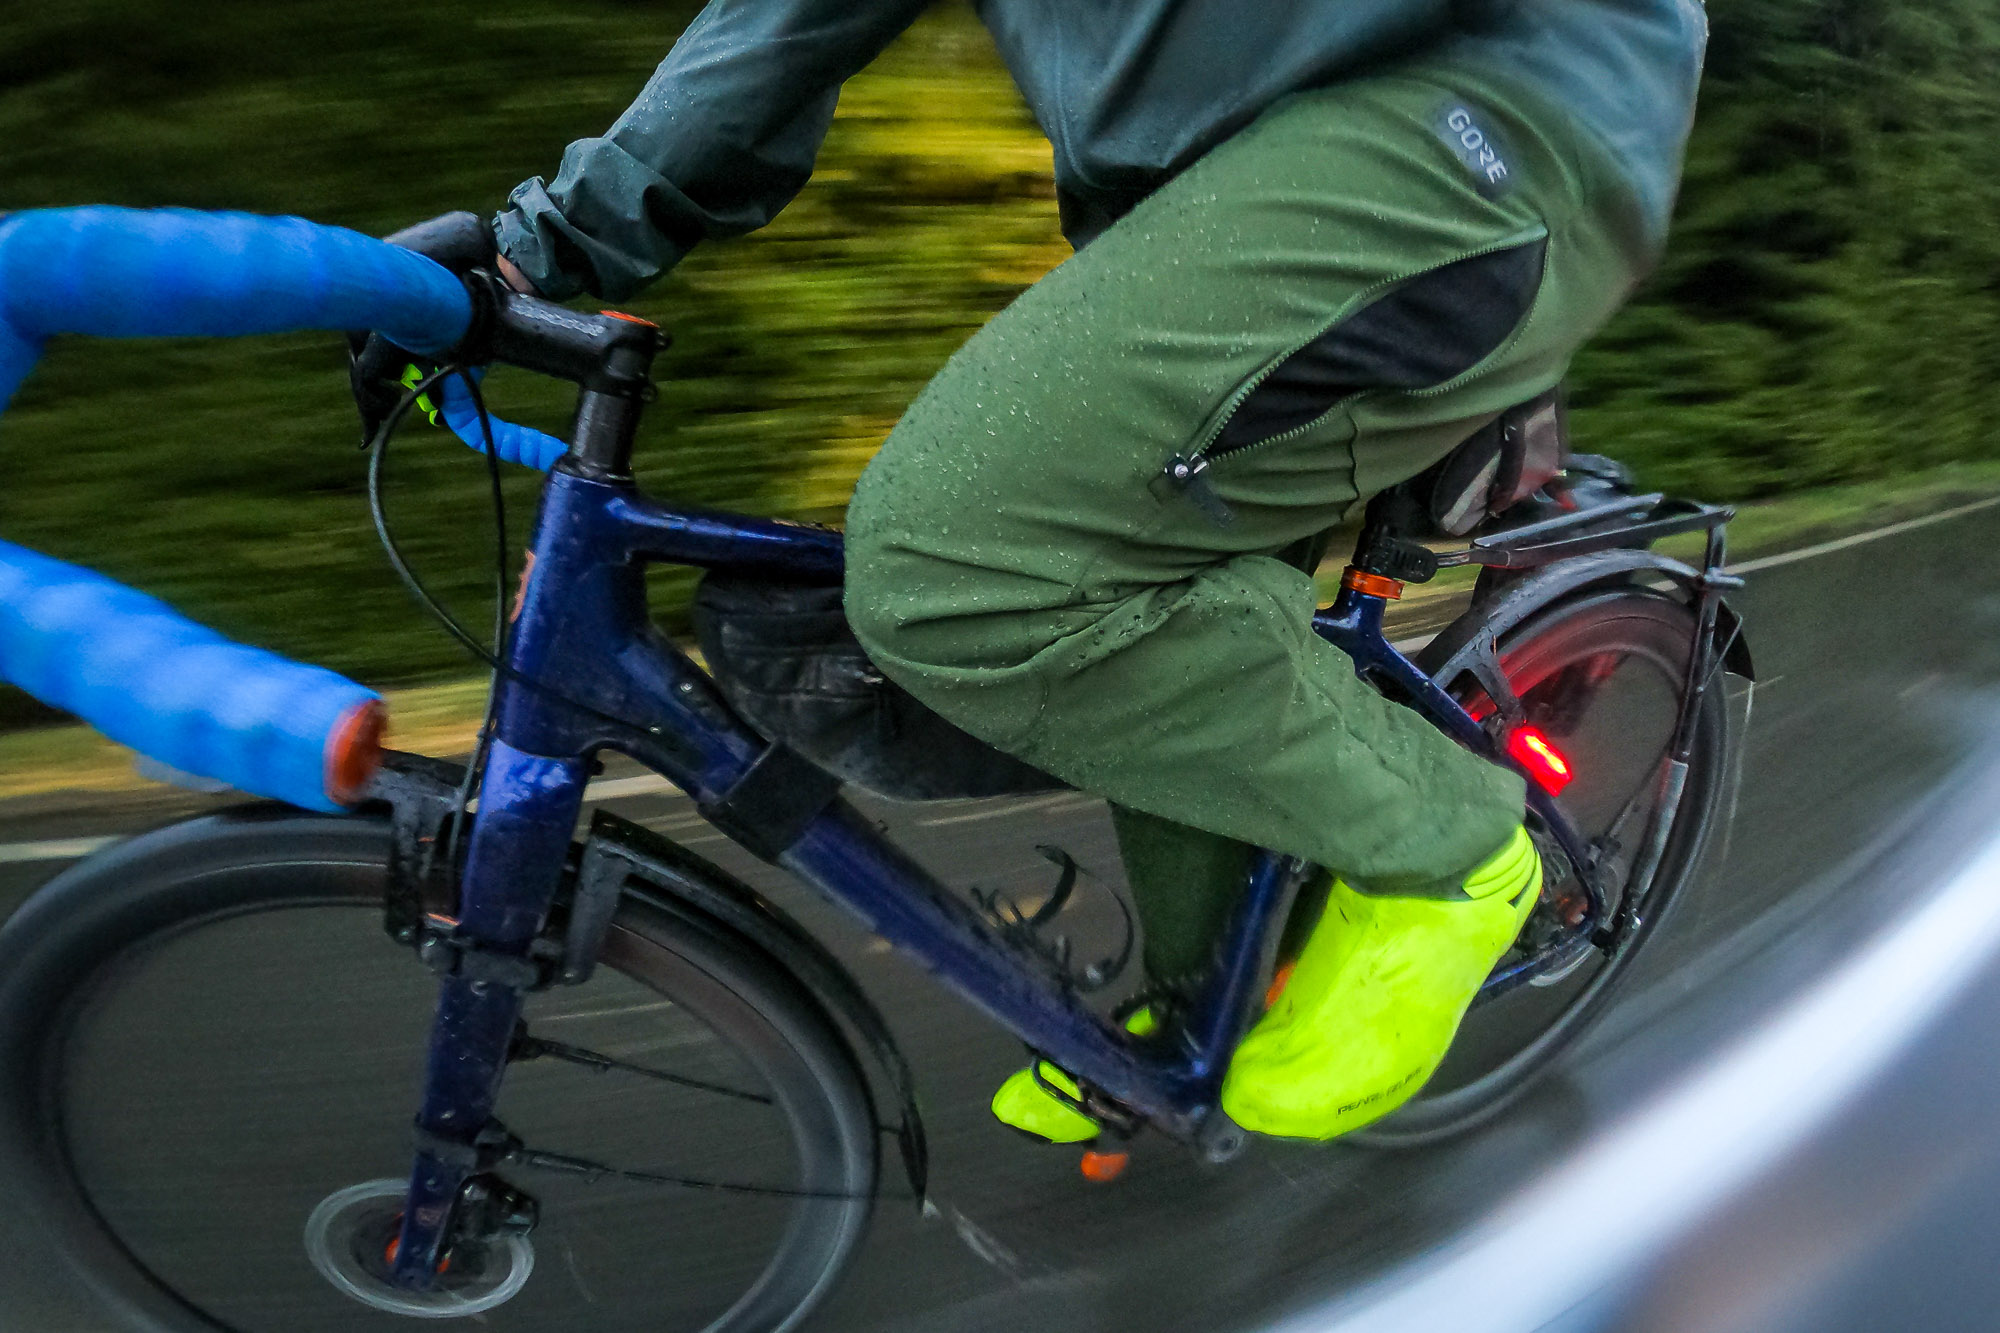 GORE Wear Fernflow GTX Pants - Pantalones de ciclismo Hombre, Comprar  online